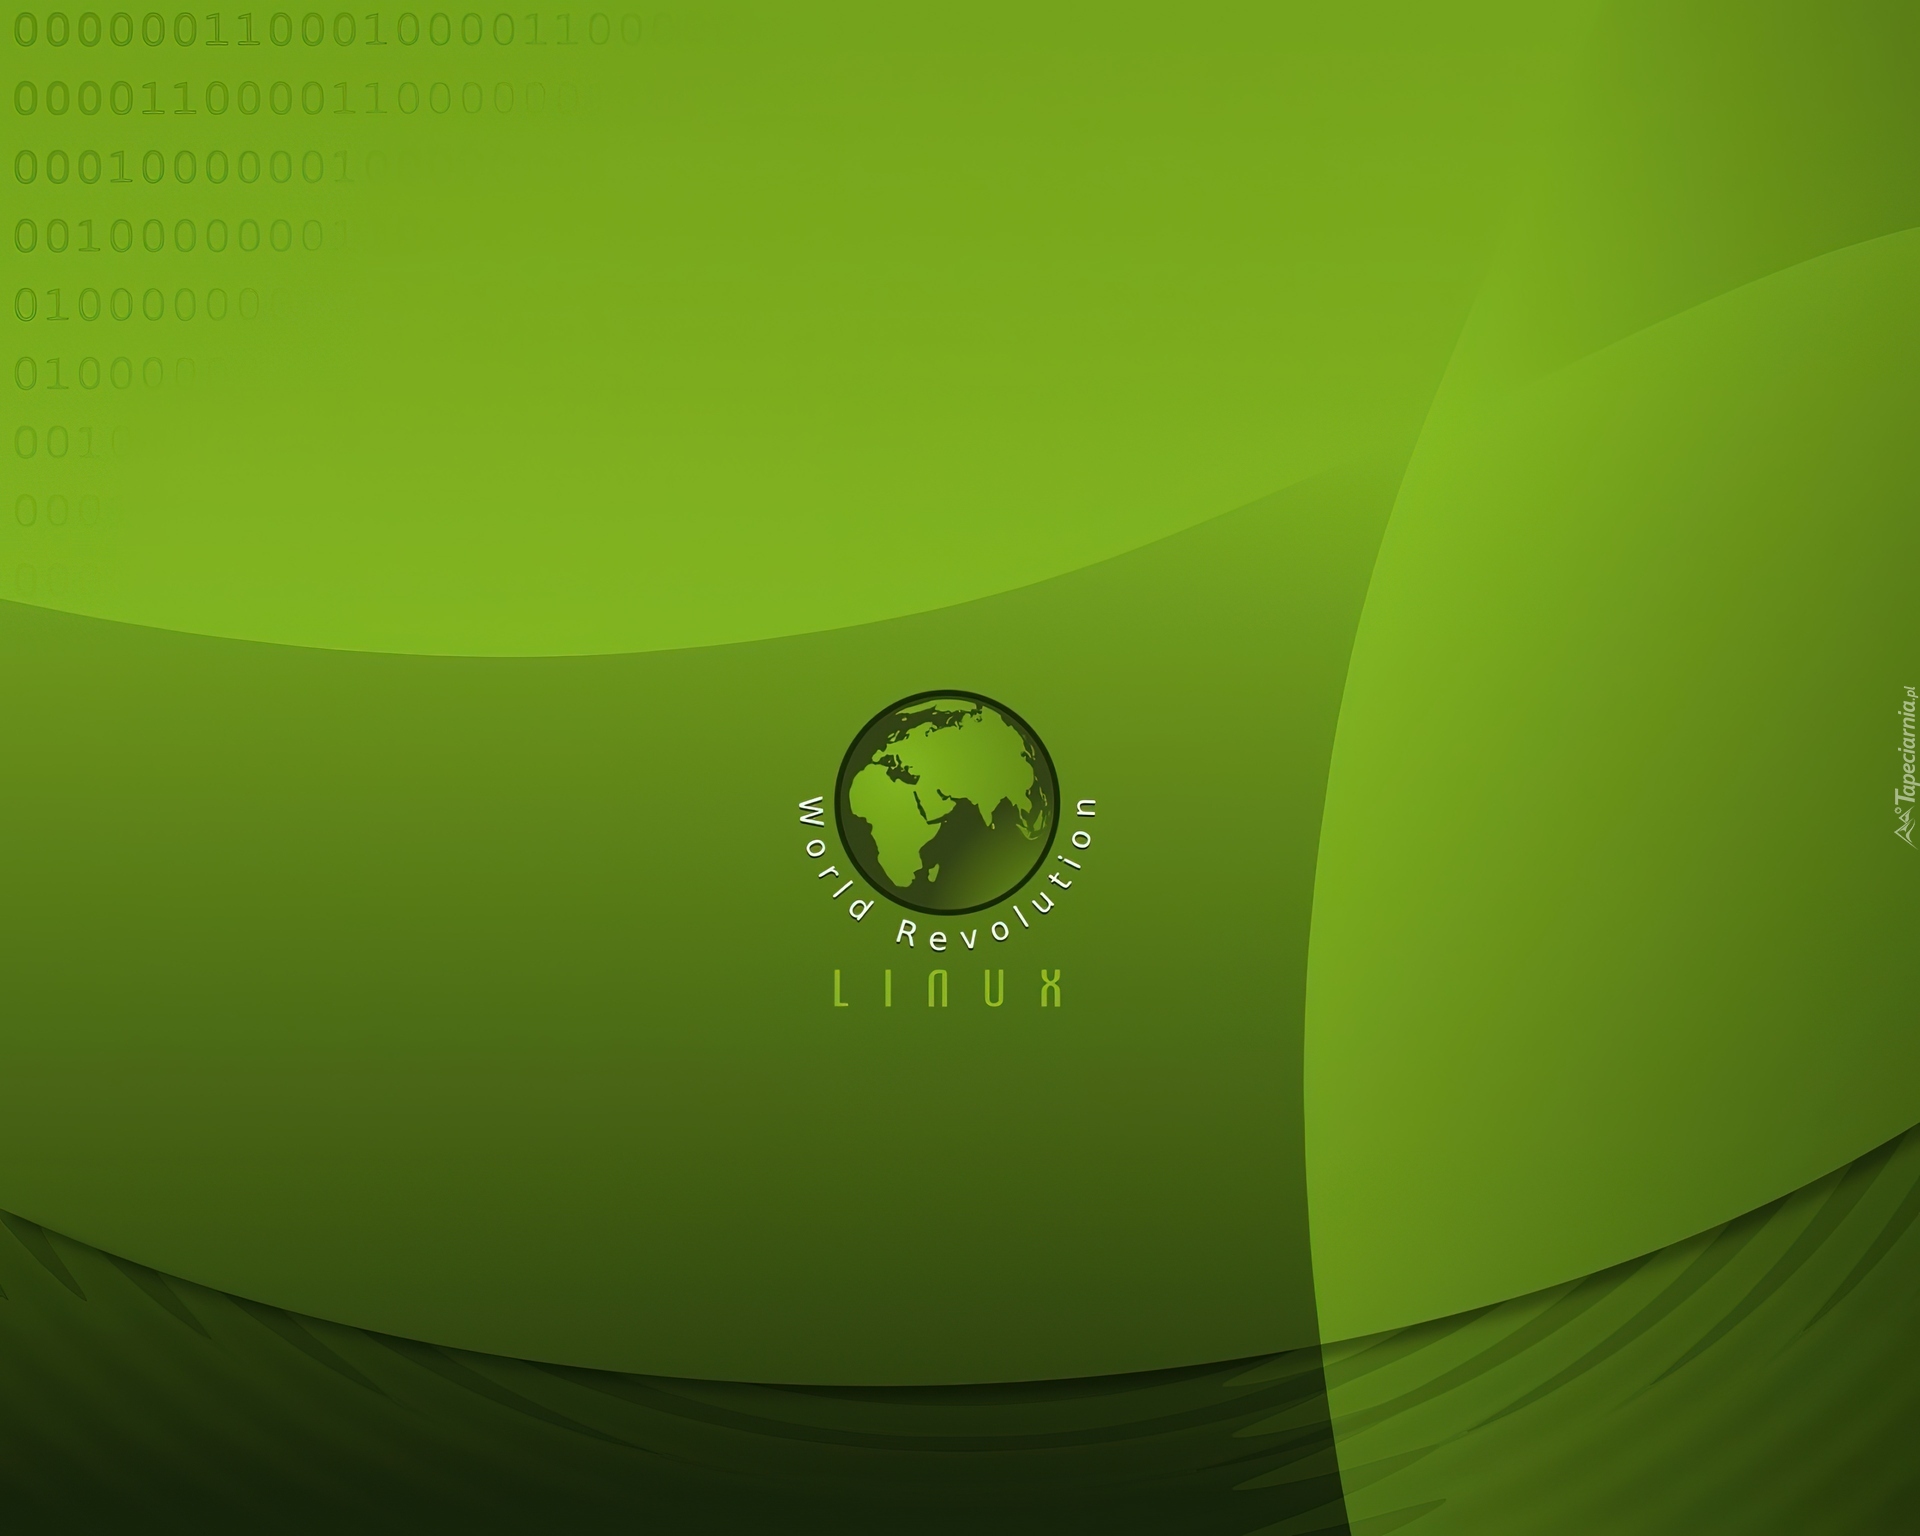 Linux, Świat, Zielone, Tło